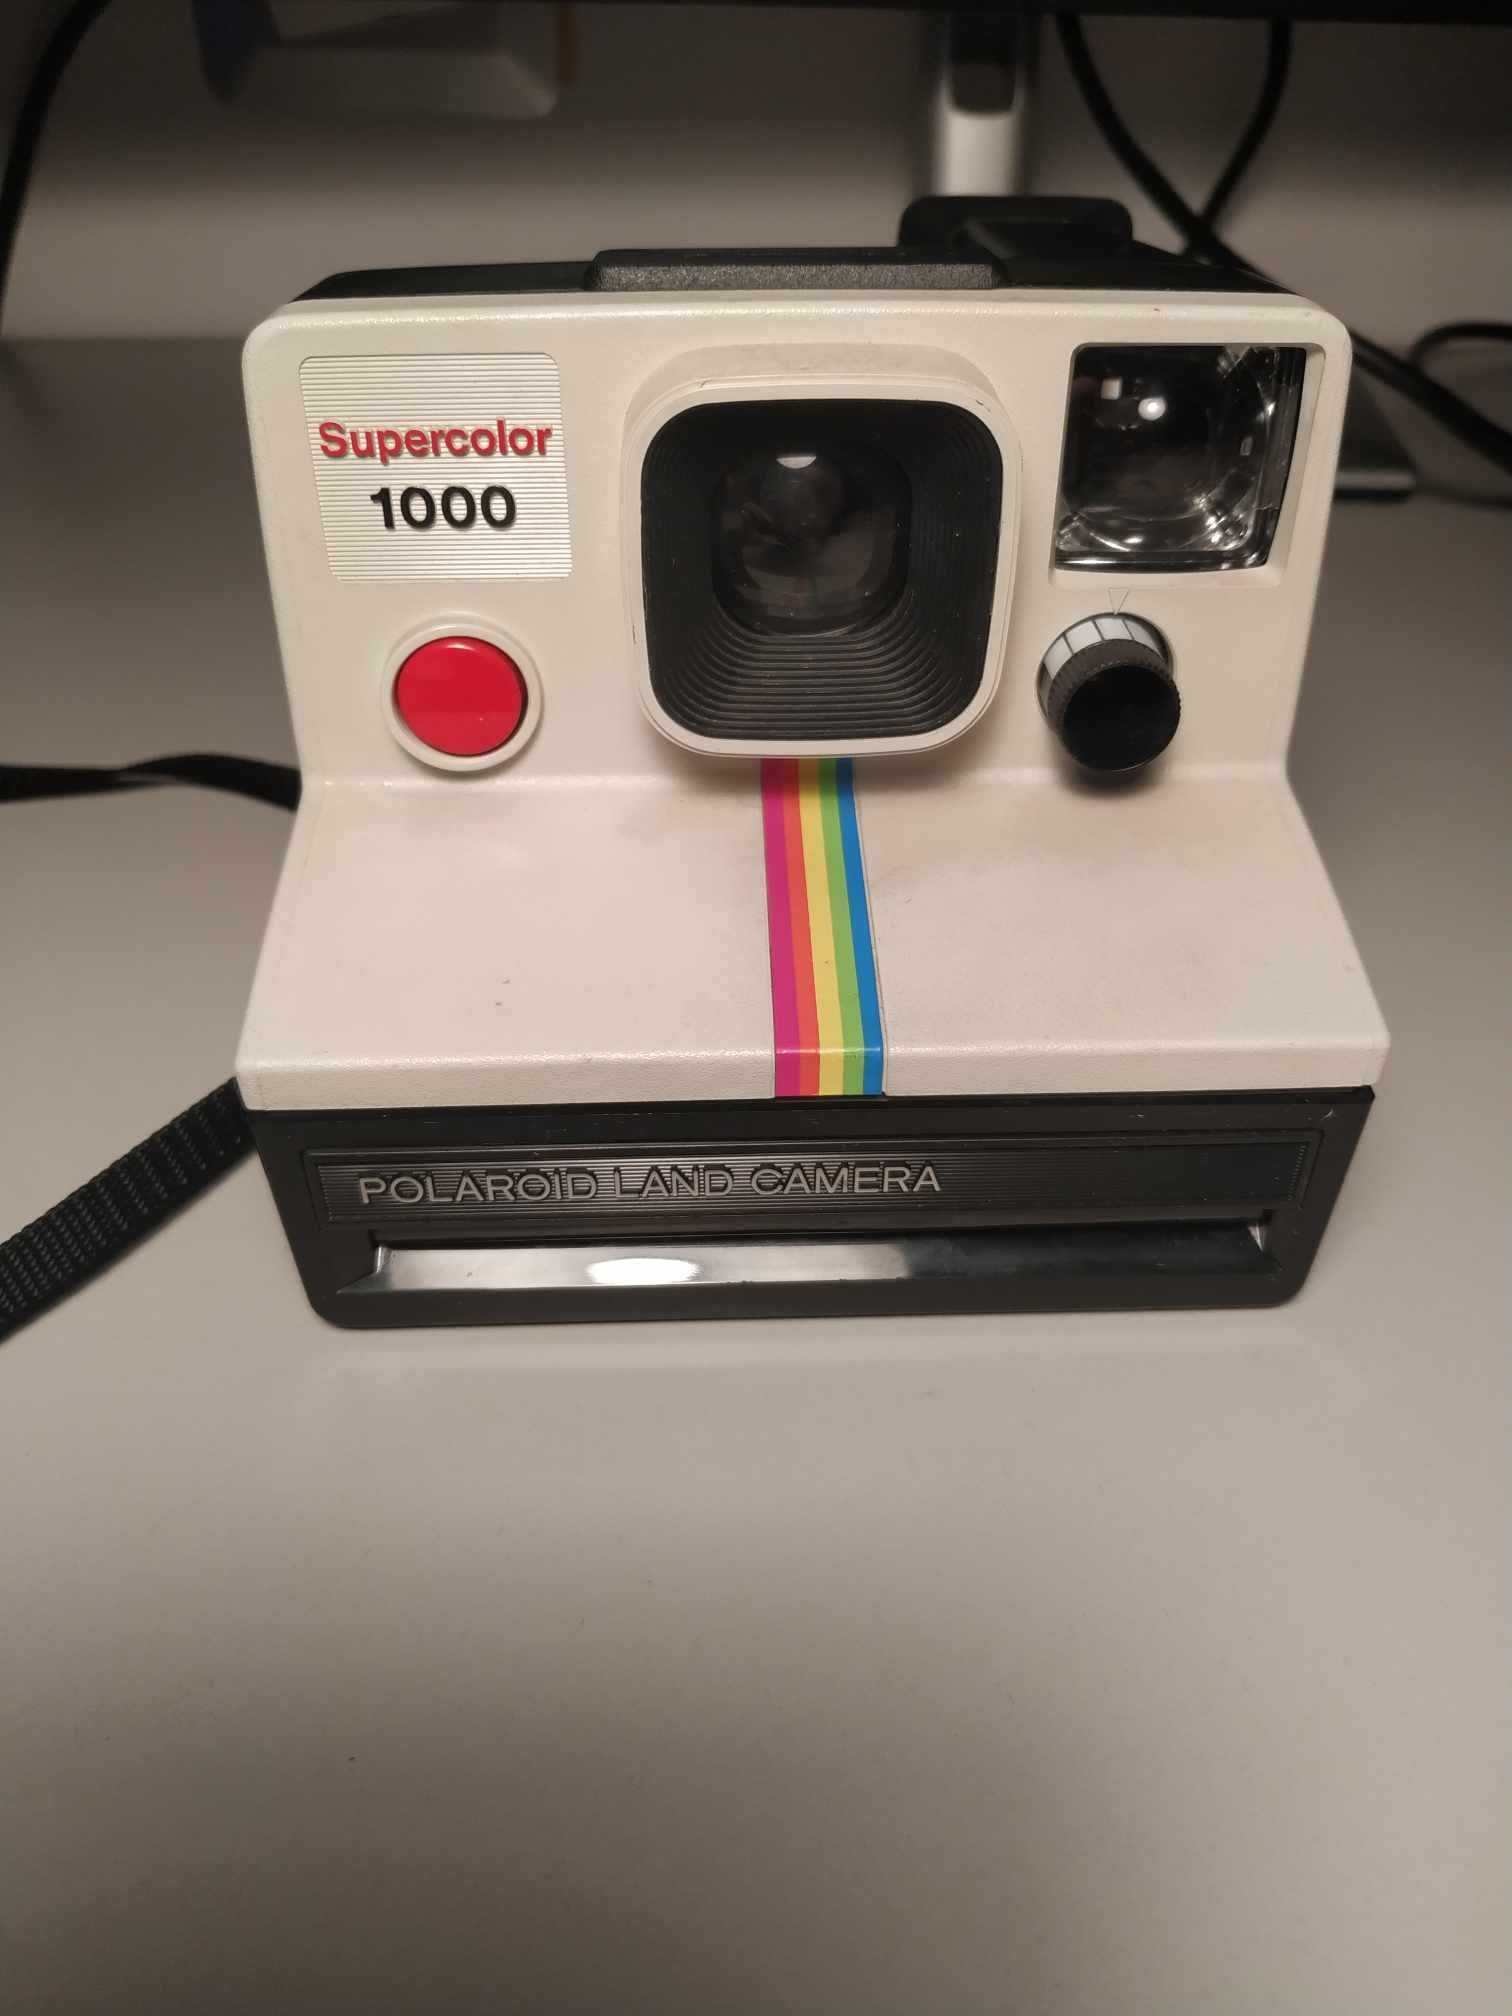 Polaroid - Supercolor 1000 Camera